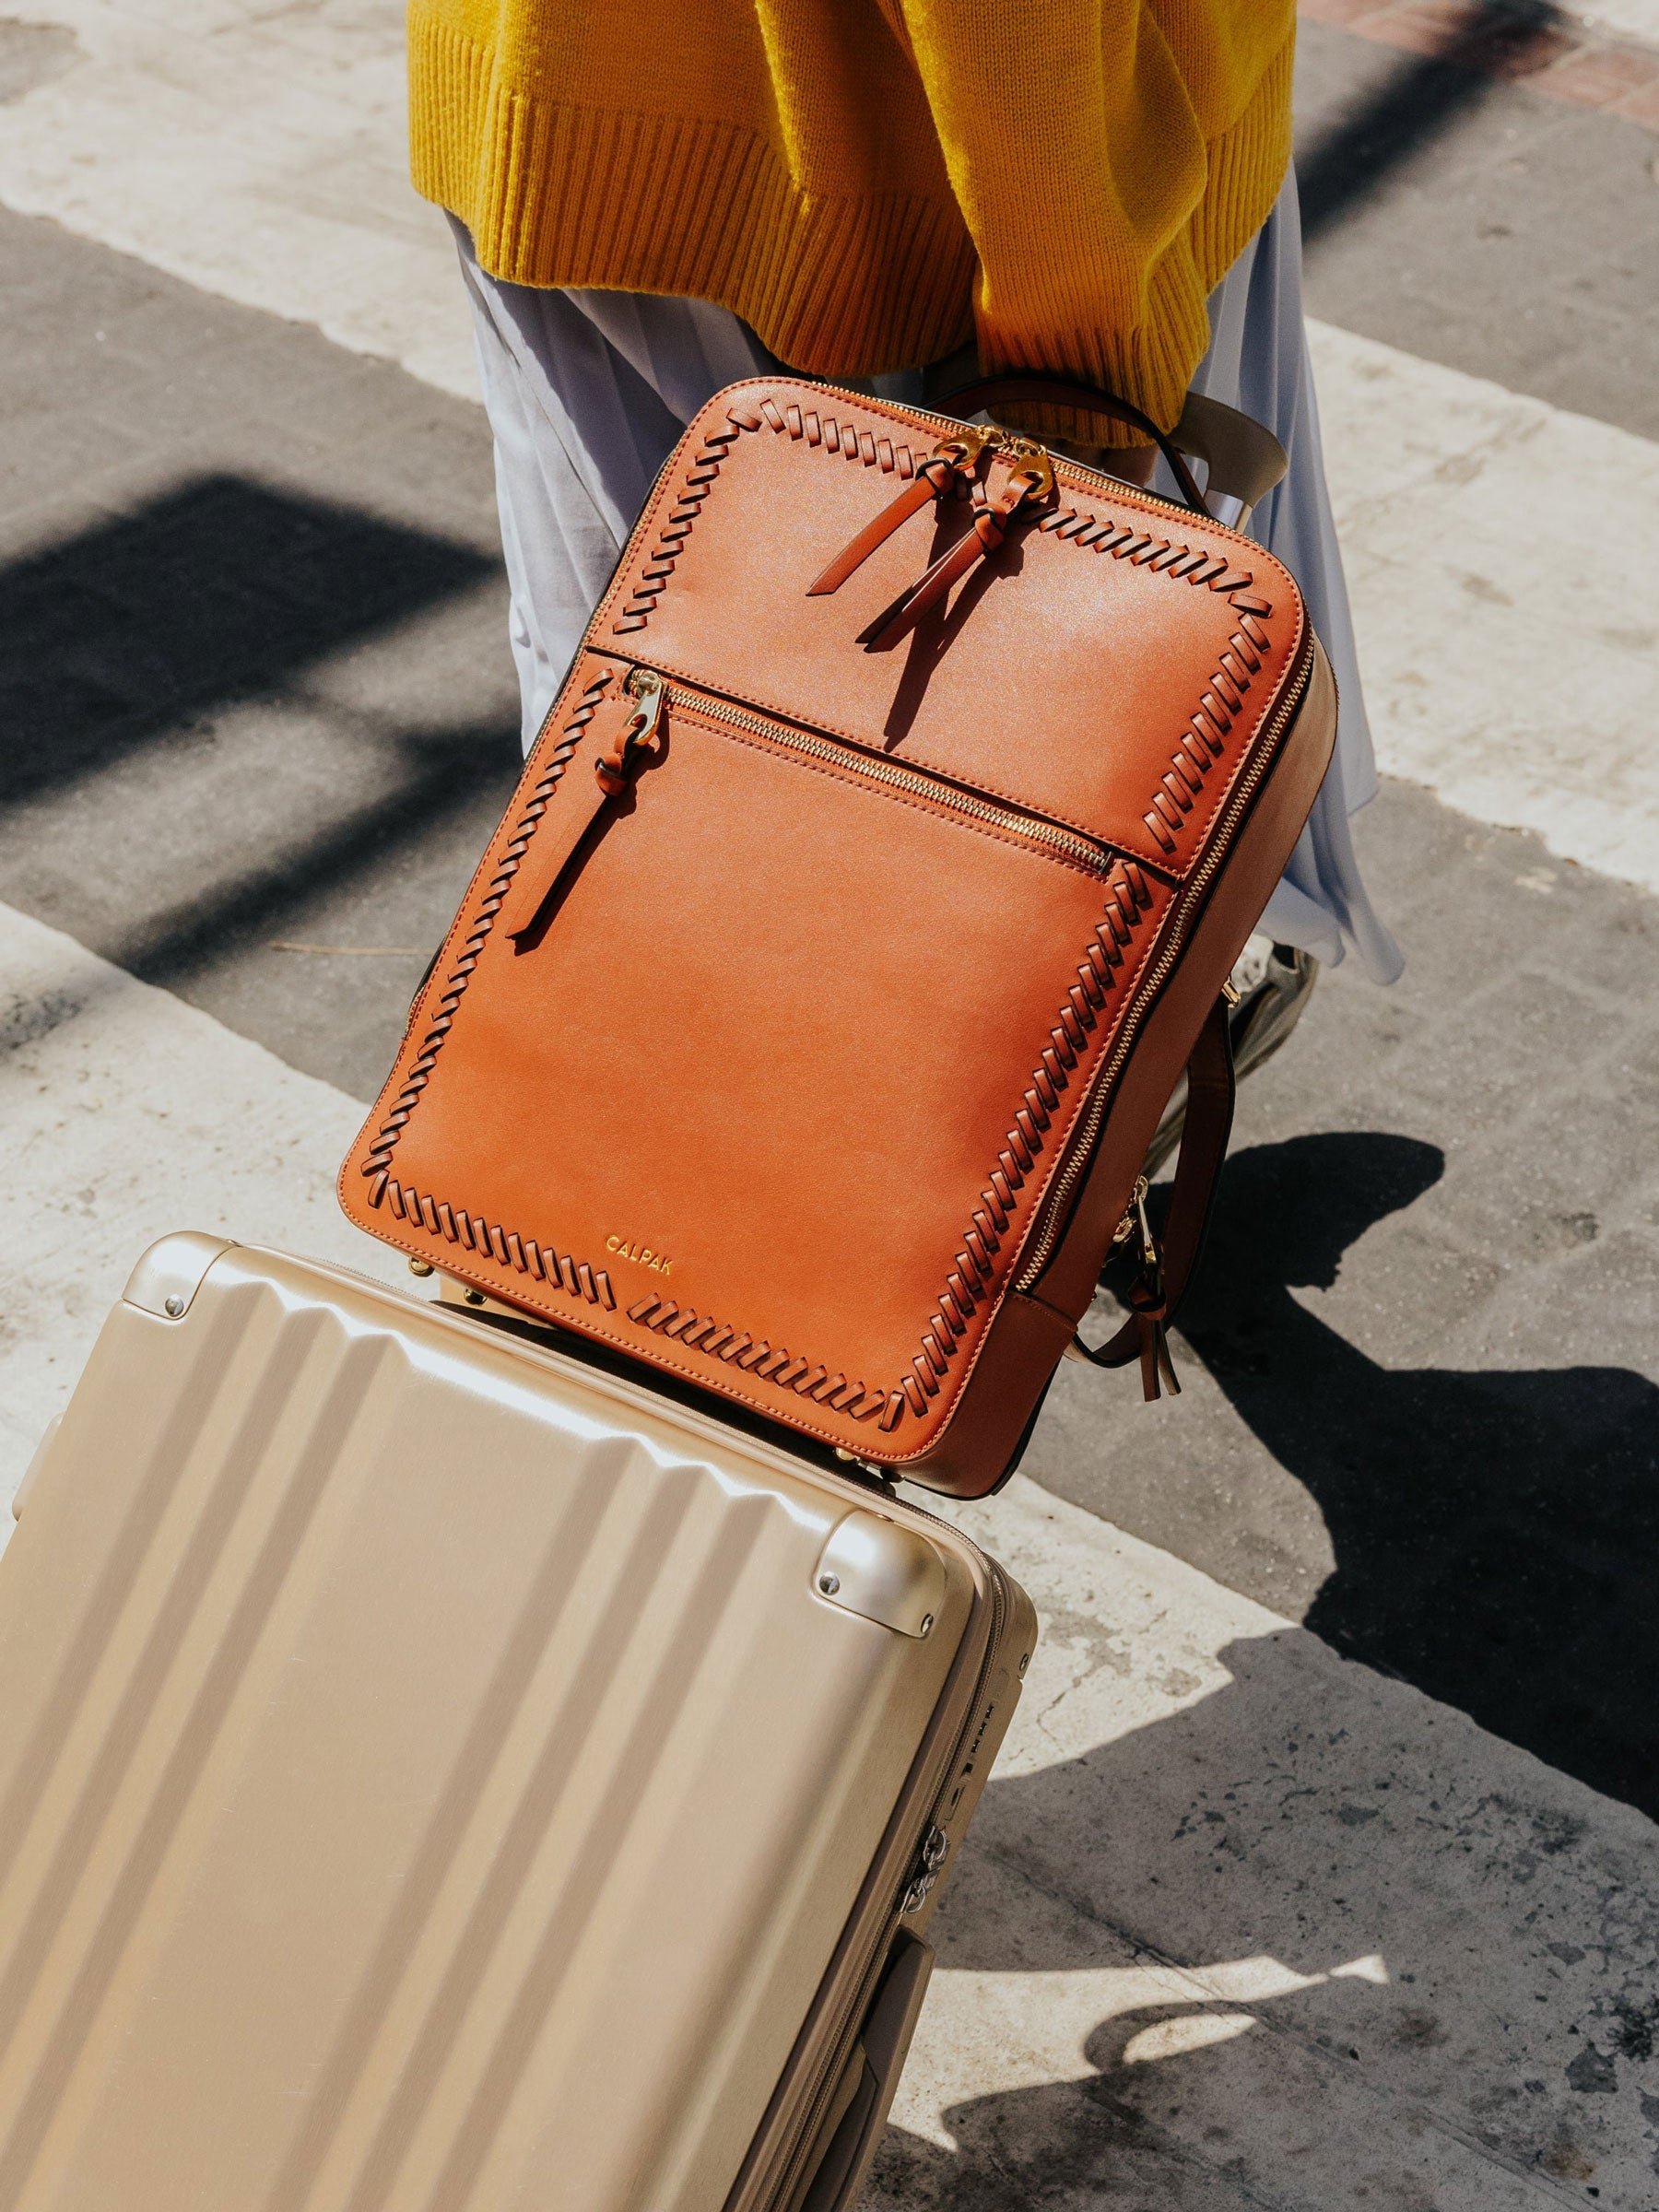 CALPAK Kaya Laptop Backpack for travel with luggage sleeve sedona